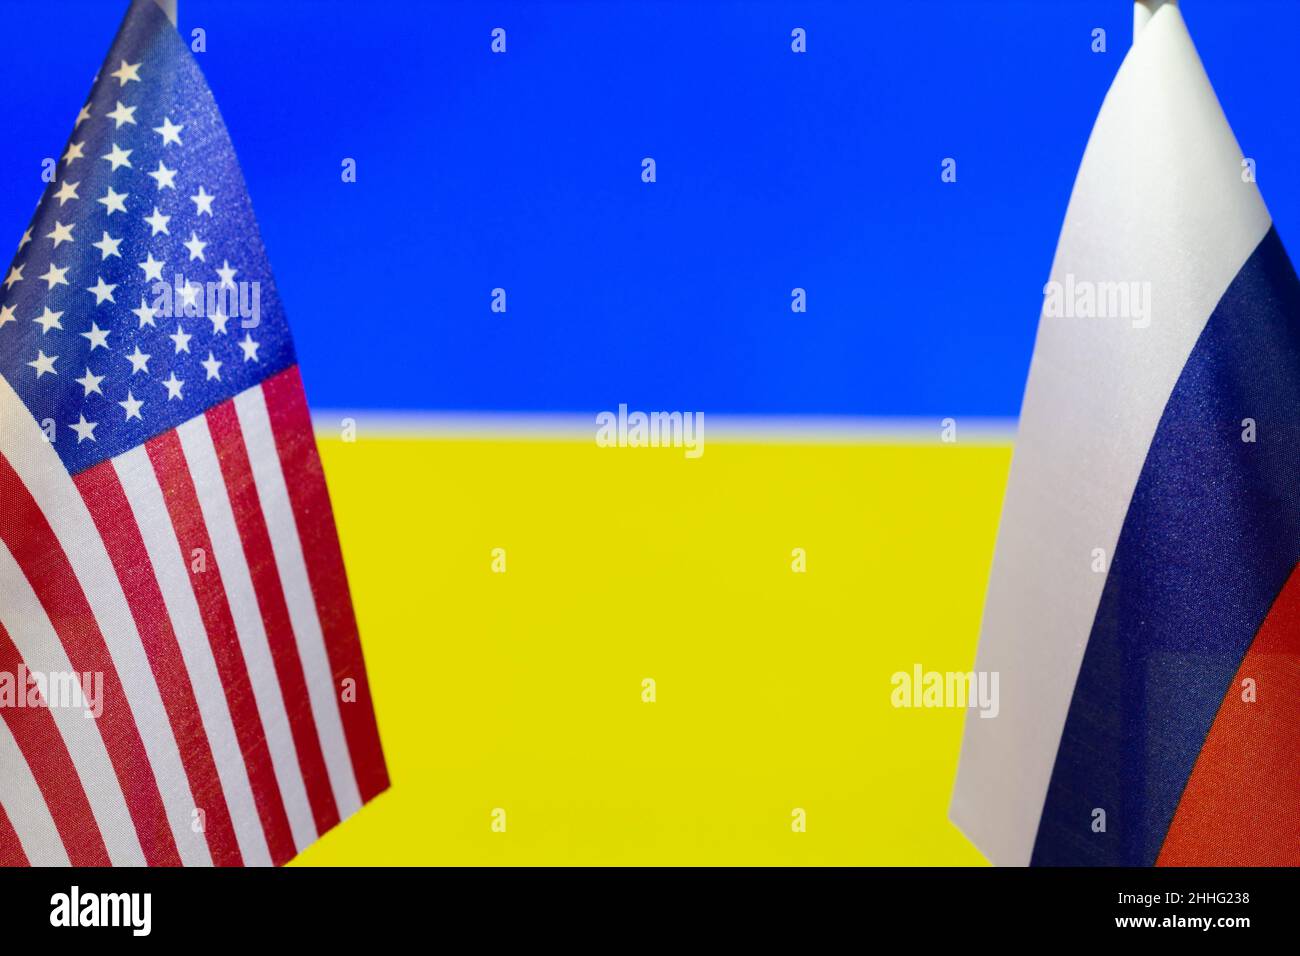 Die US-Flagge und die russische Flagge auf dem Hintergrund der Ukraine-Flagge. Flagge der USA, Russlands und der Ukraine. Die Vereinigten Staaten von Amerika und die russische Fede Stockfoto